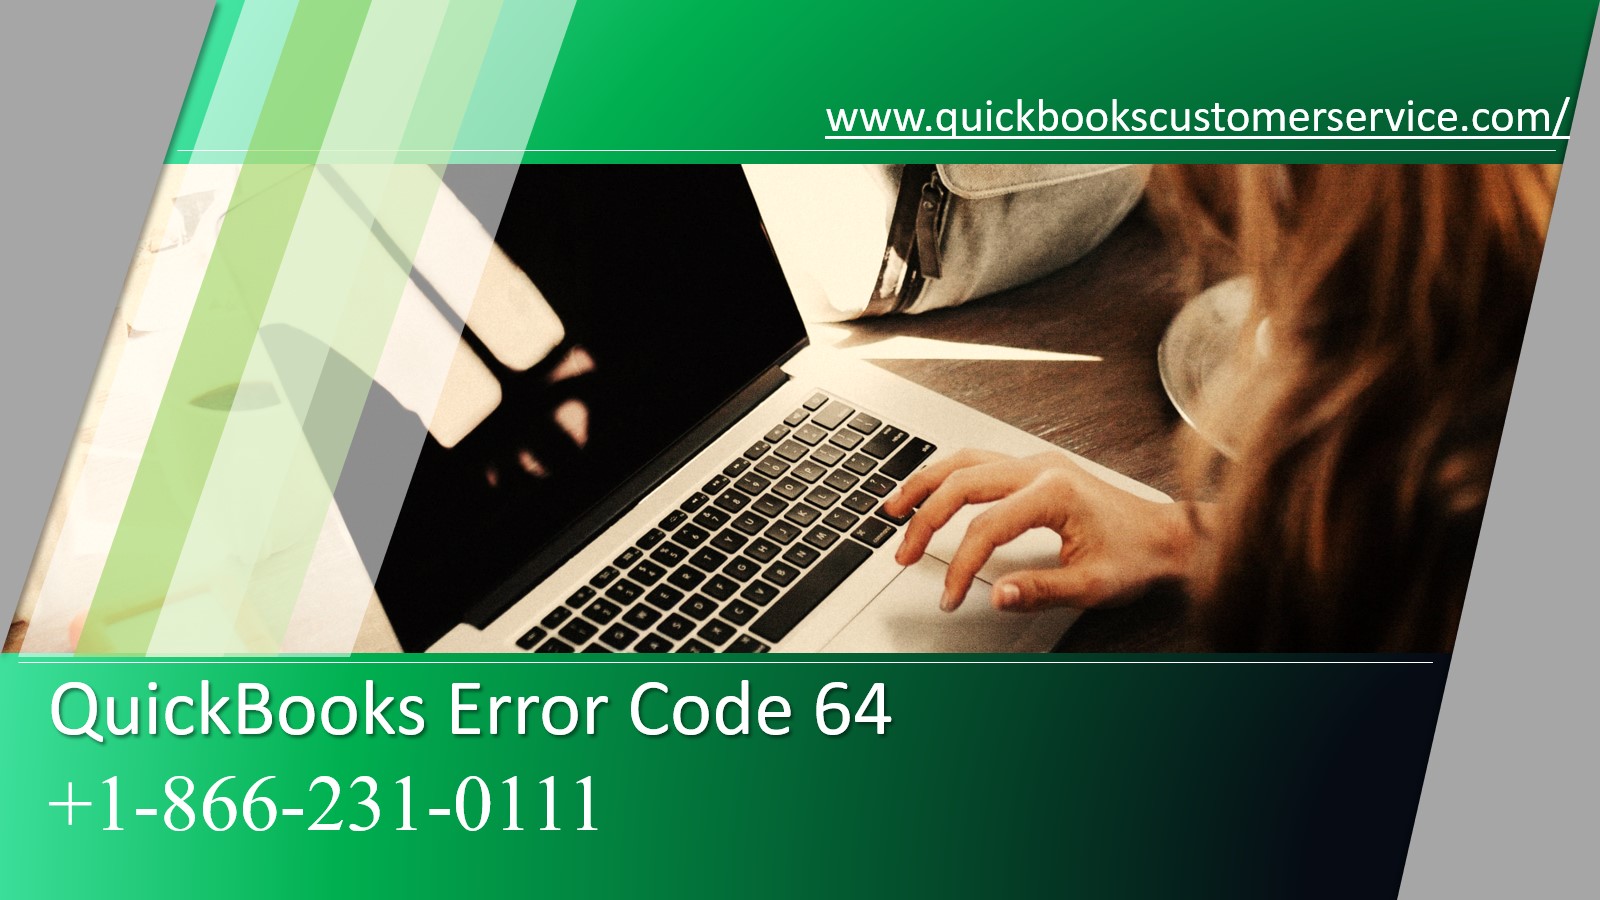 quickbooks falló con el estándar de error 64